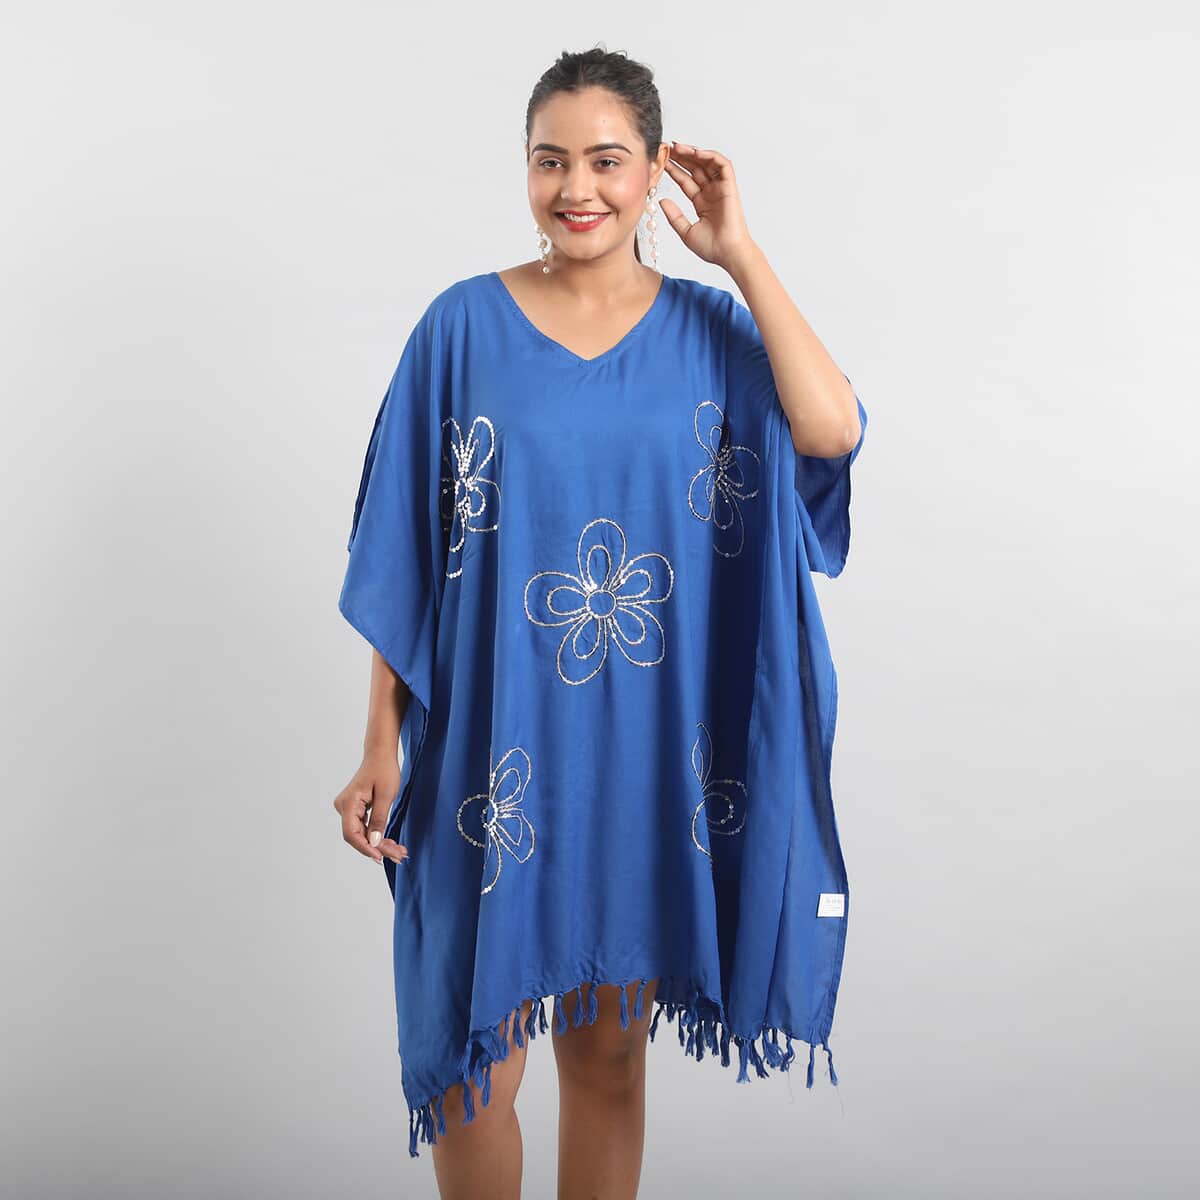 JOVIE Blue Sequin and Fringe Embellishments V-Neck Kaftan Top - One Size Fits Most (35"x45") image number 0